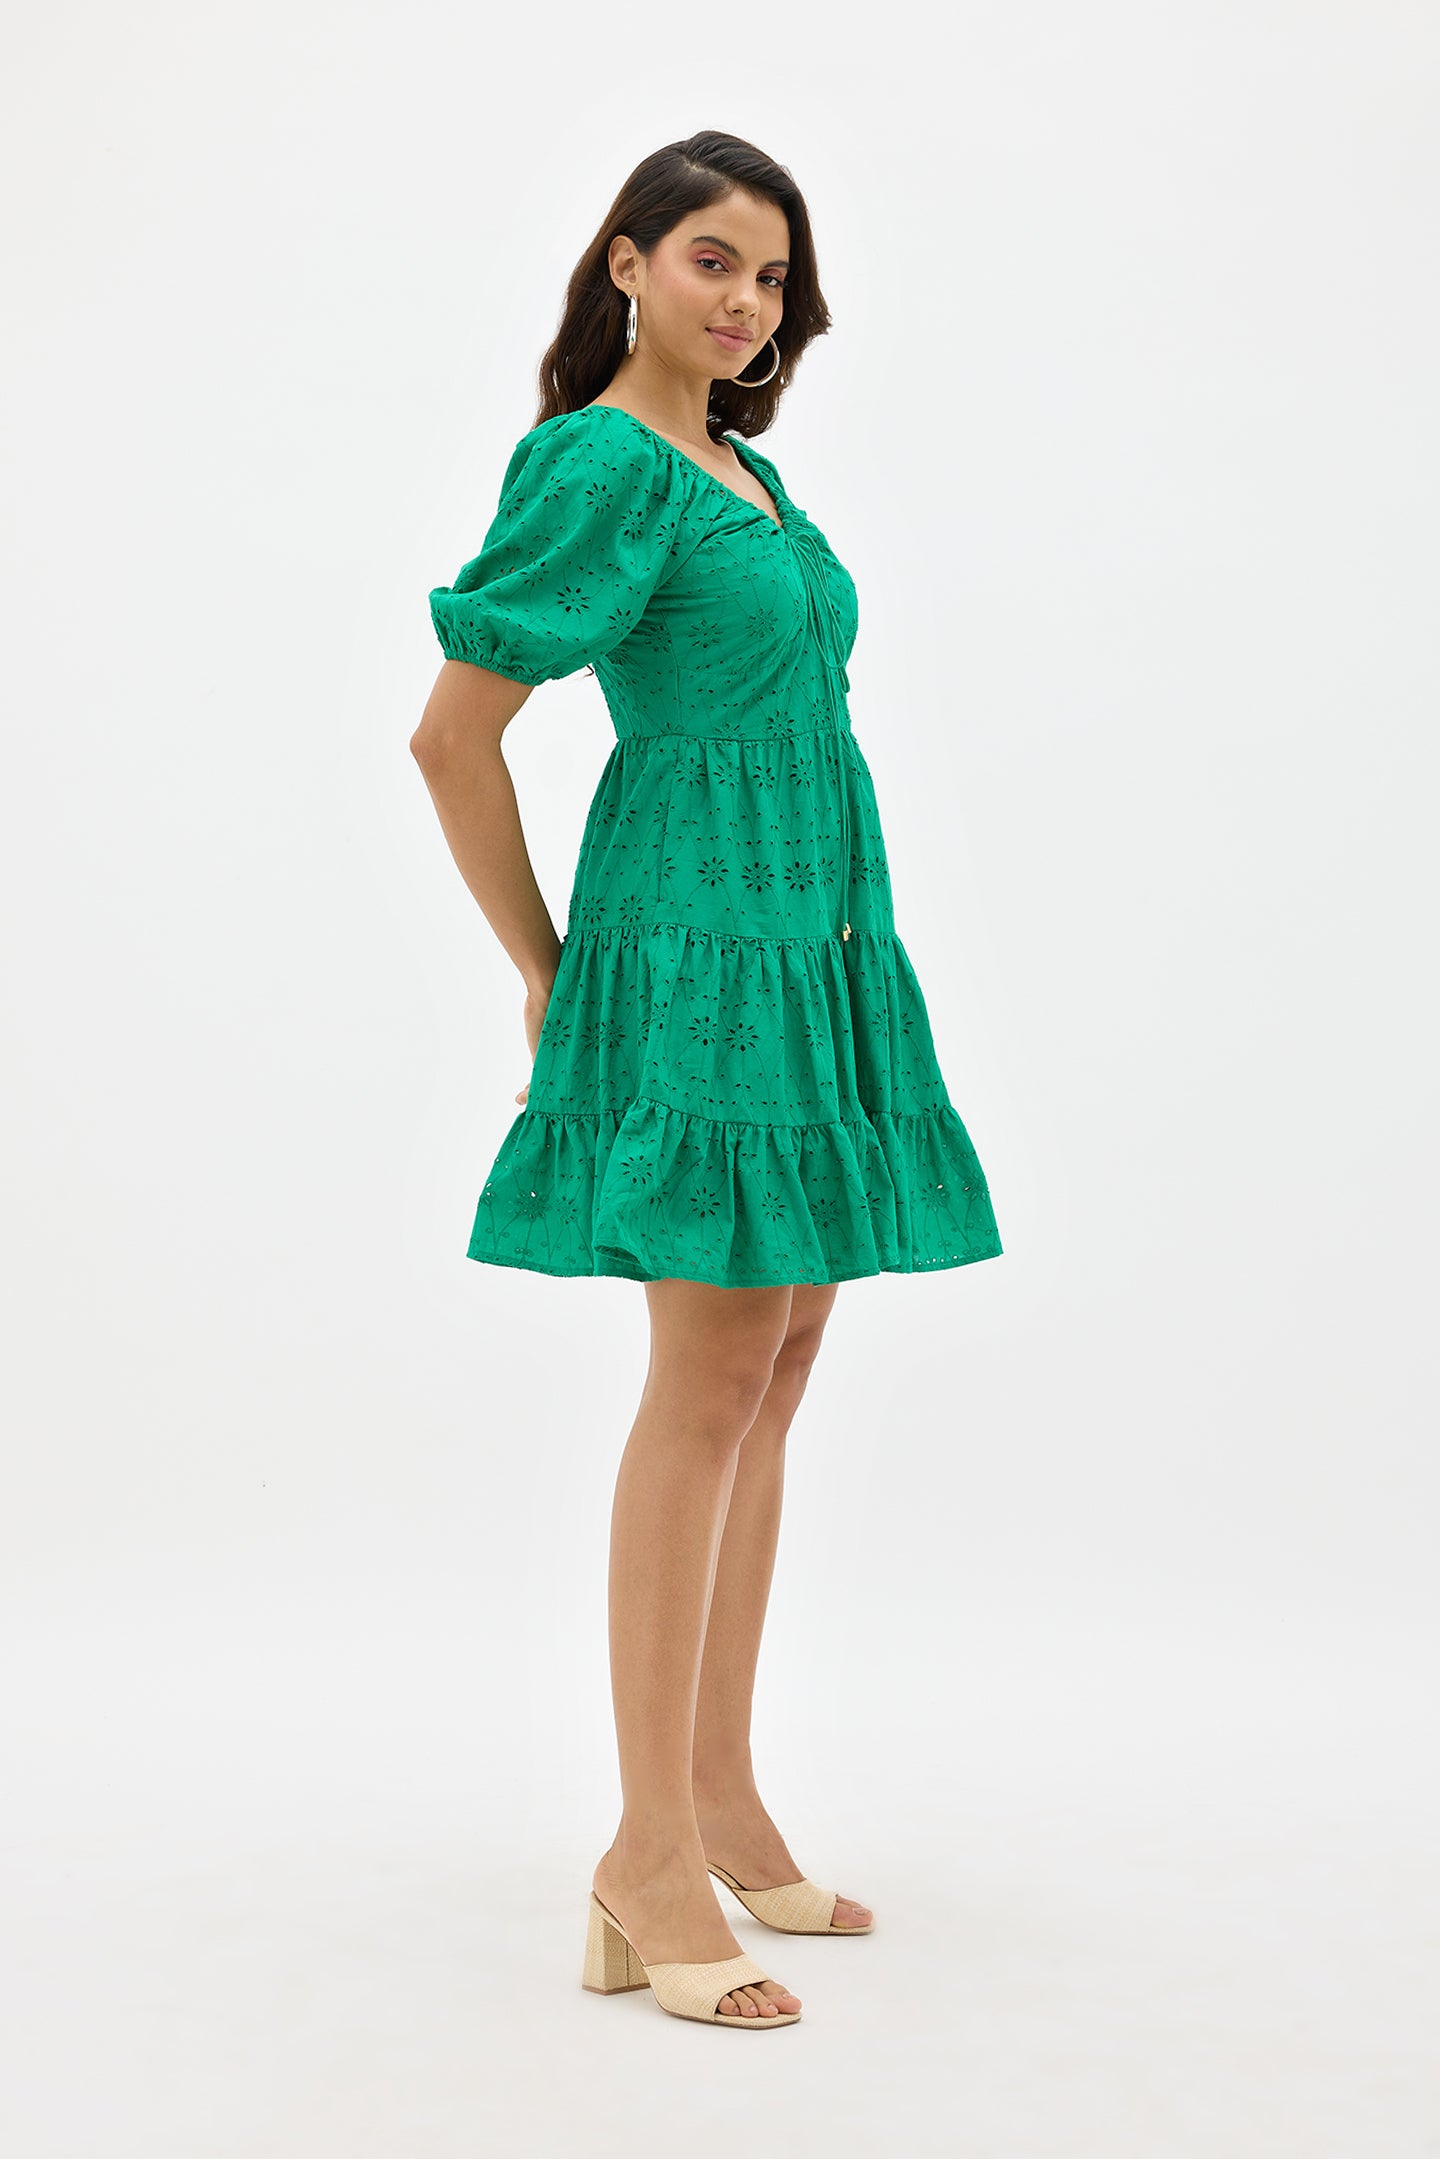 Mona|Soft cotton green schiffli tiered dress